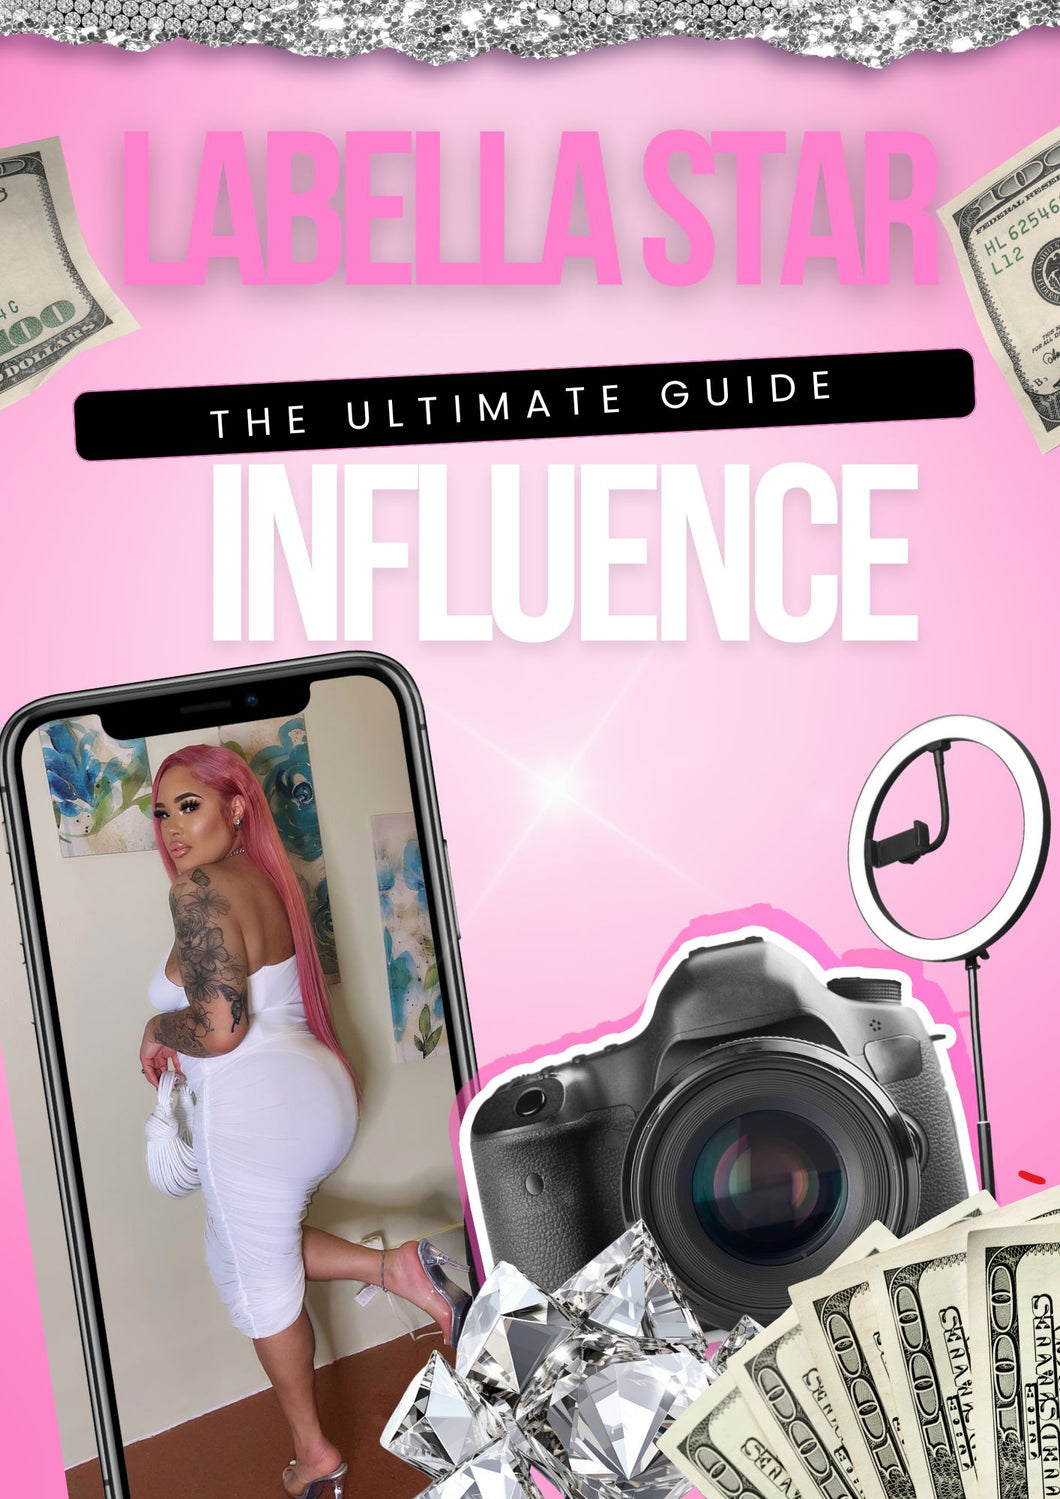 Labella Star Influence Guide